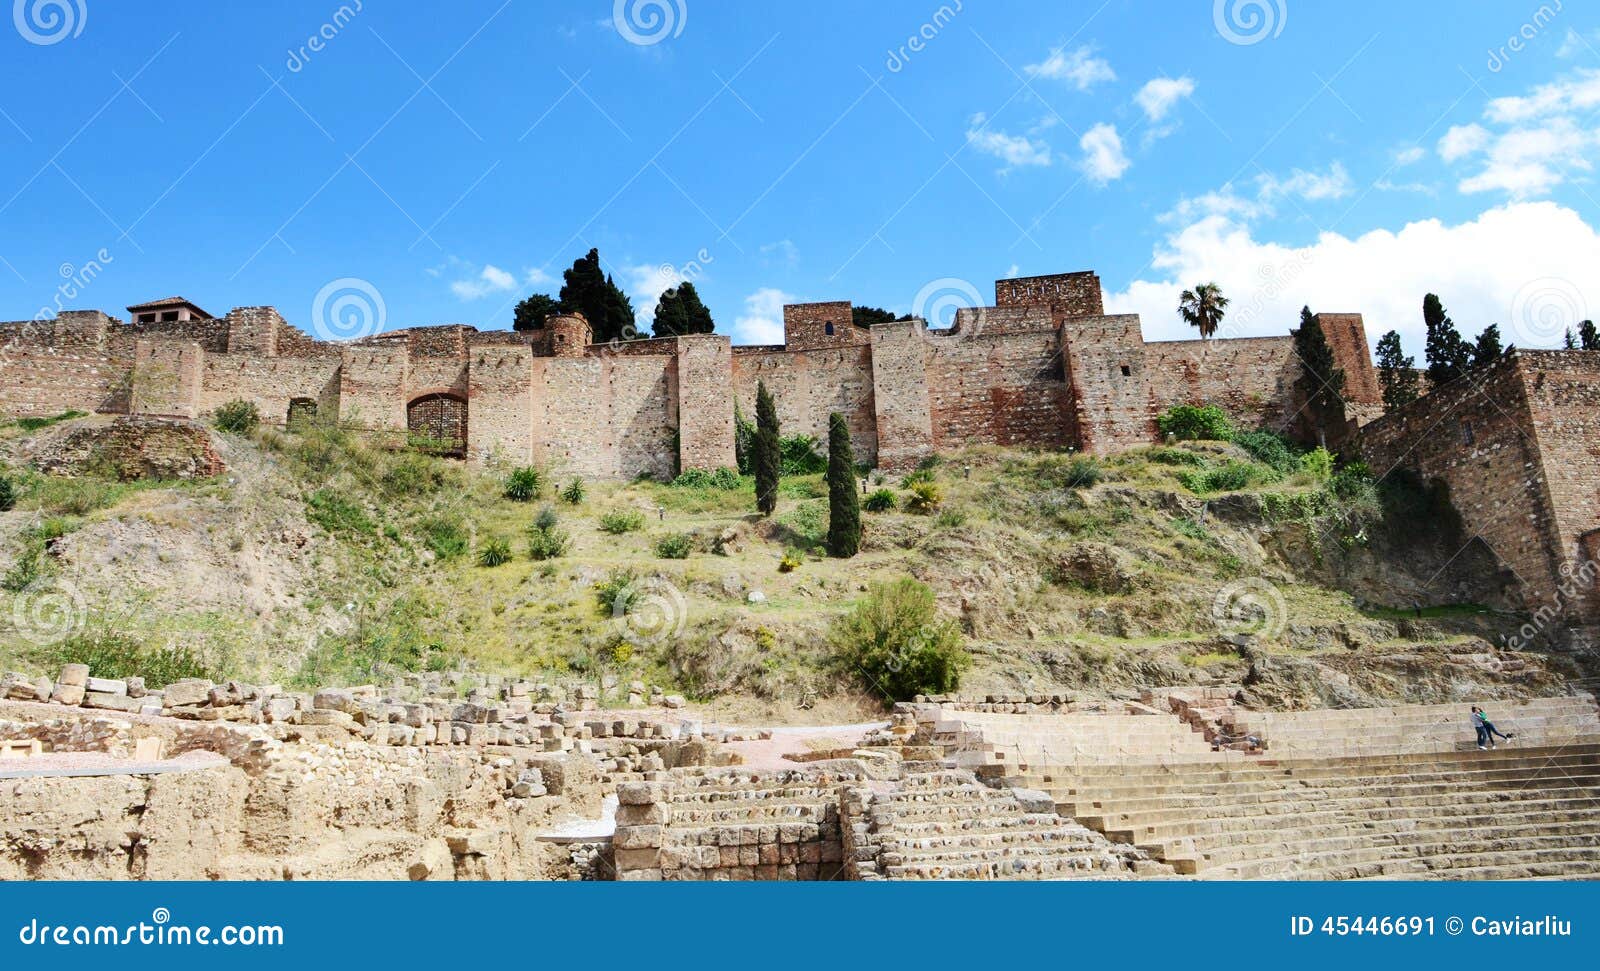 Sitio del patrimonio mundial de la UNESCO: Vista exterior de Alcazaba, Málaga, España